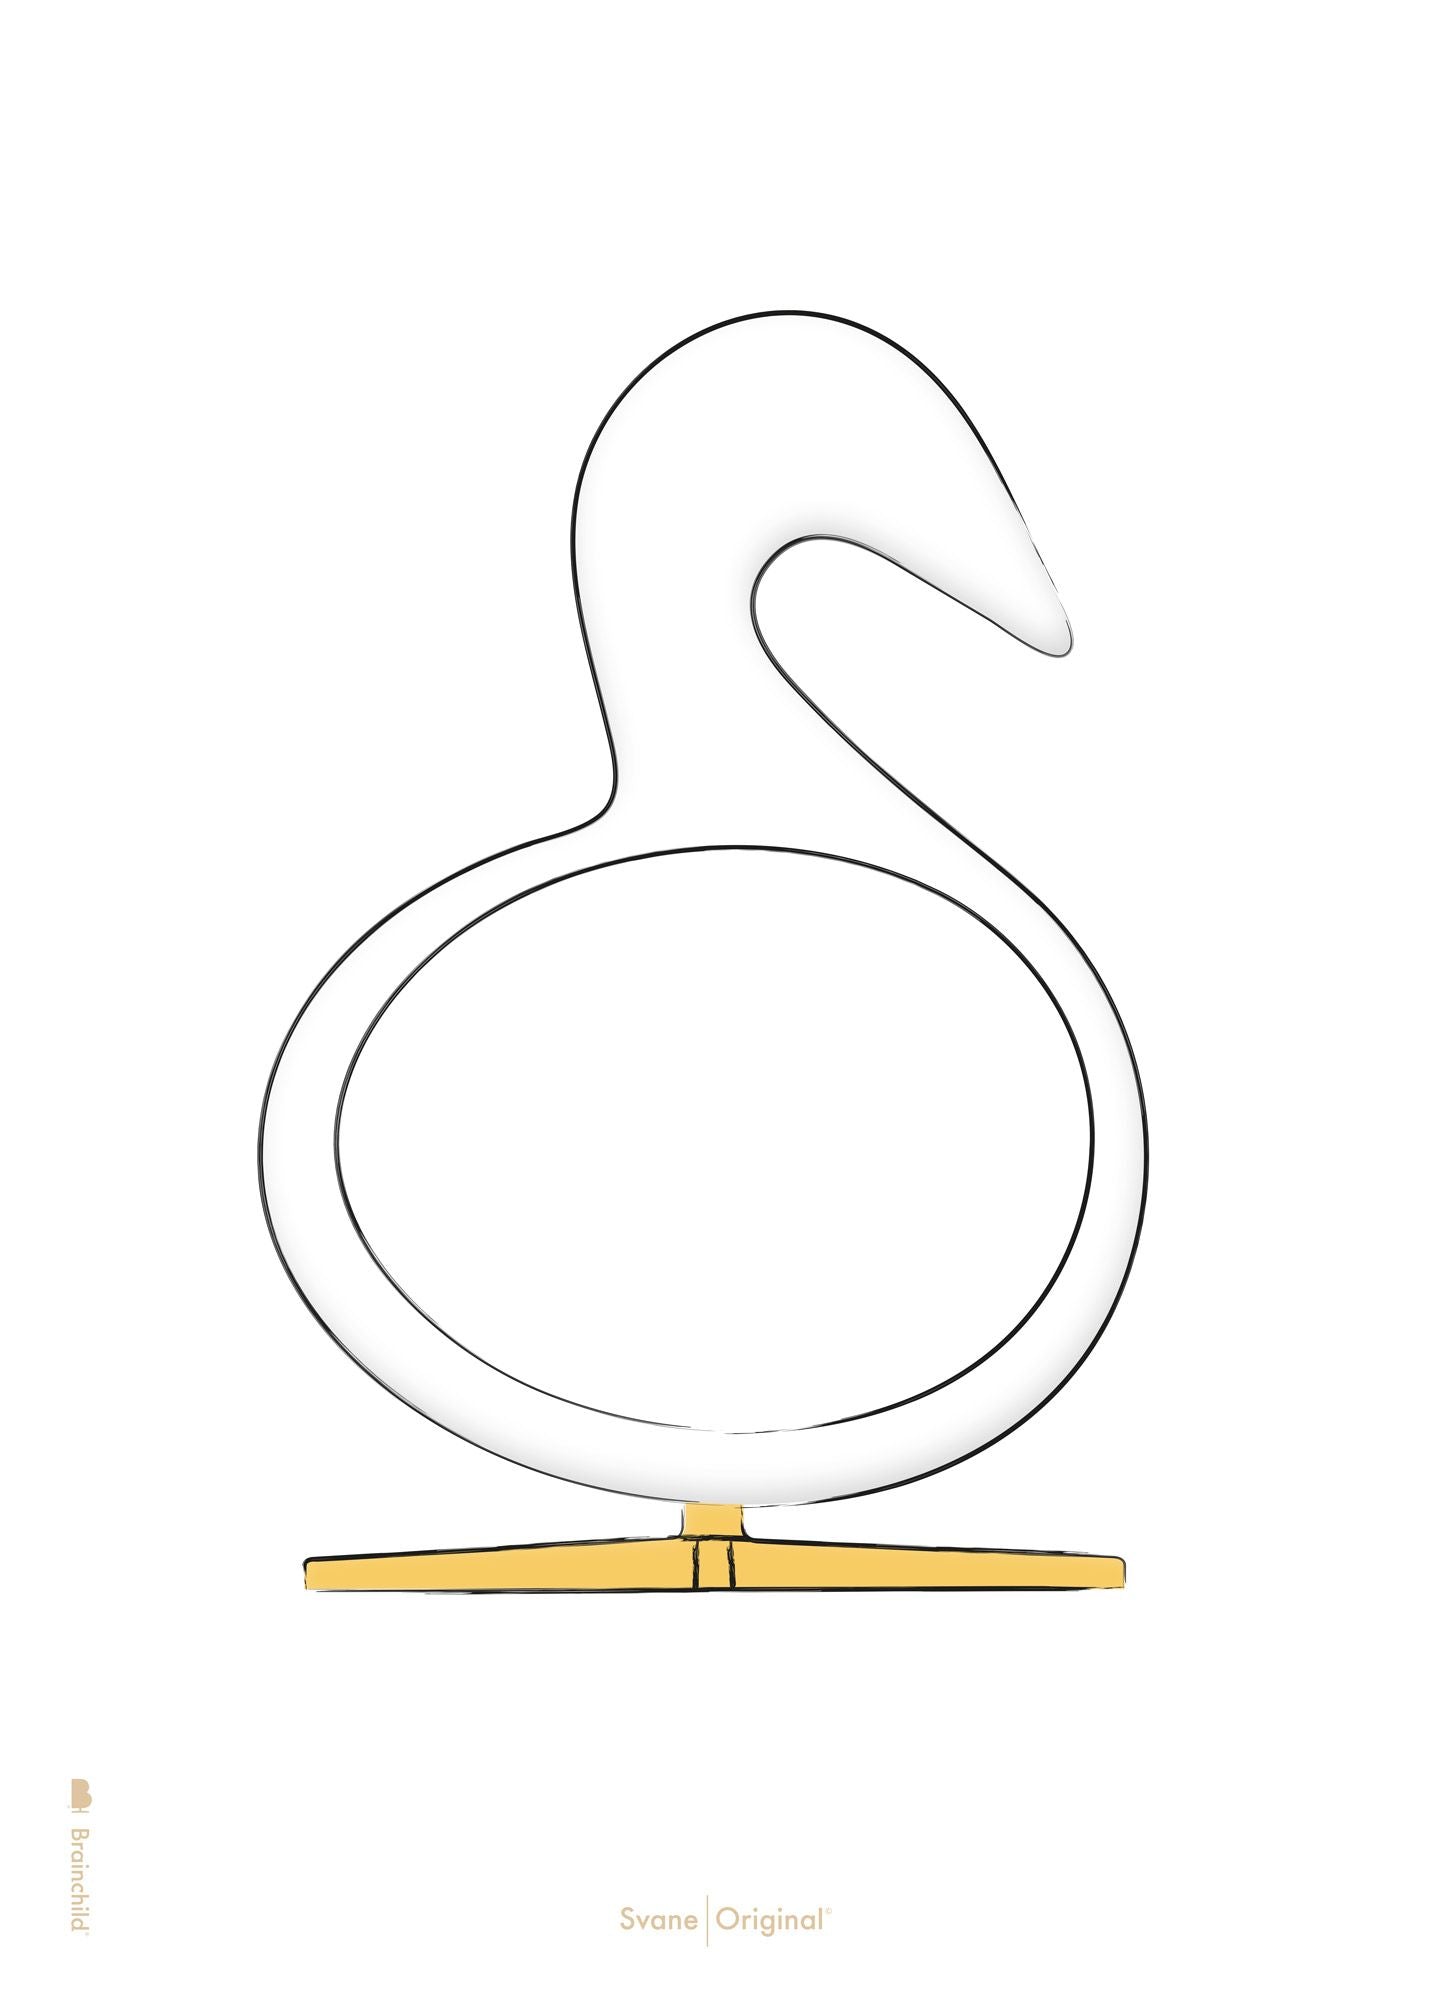 Brainchild Swan Design Sketch Plakat uden ramme A5, hvid baggrund